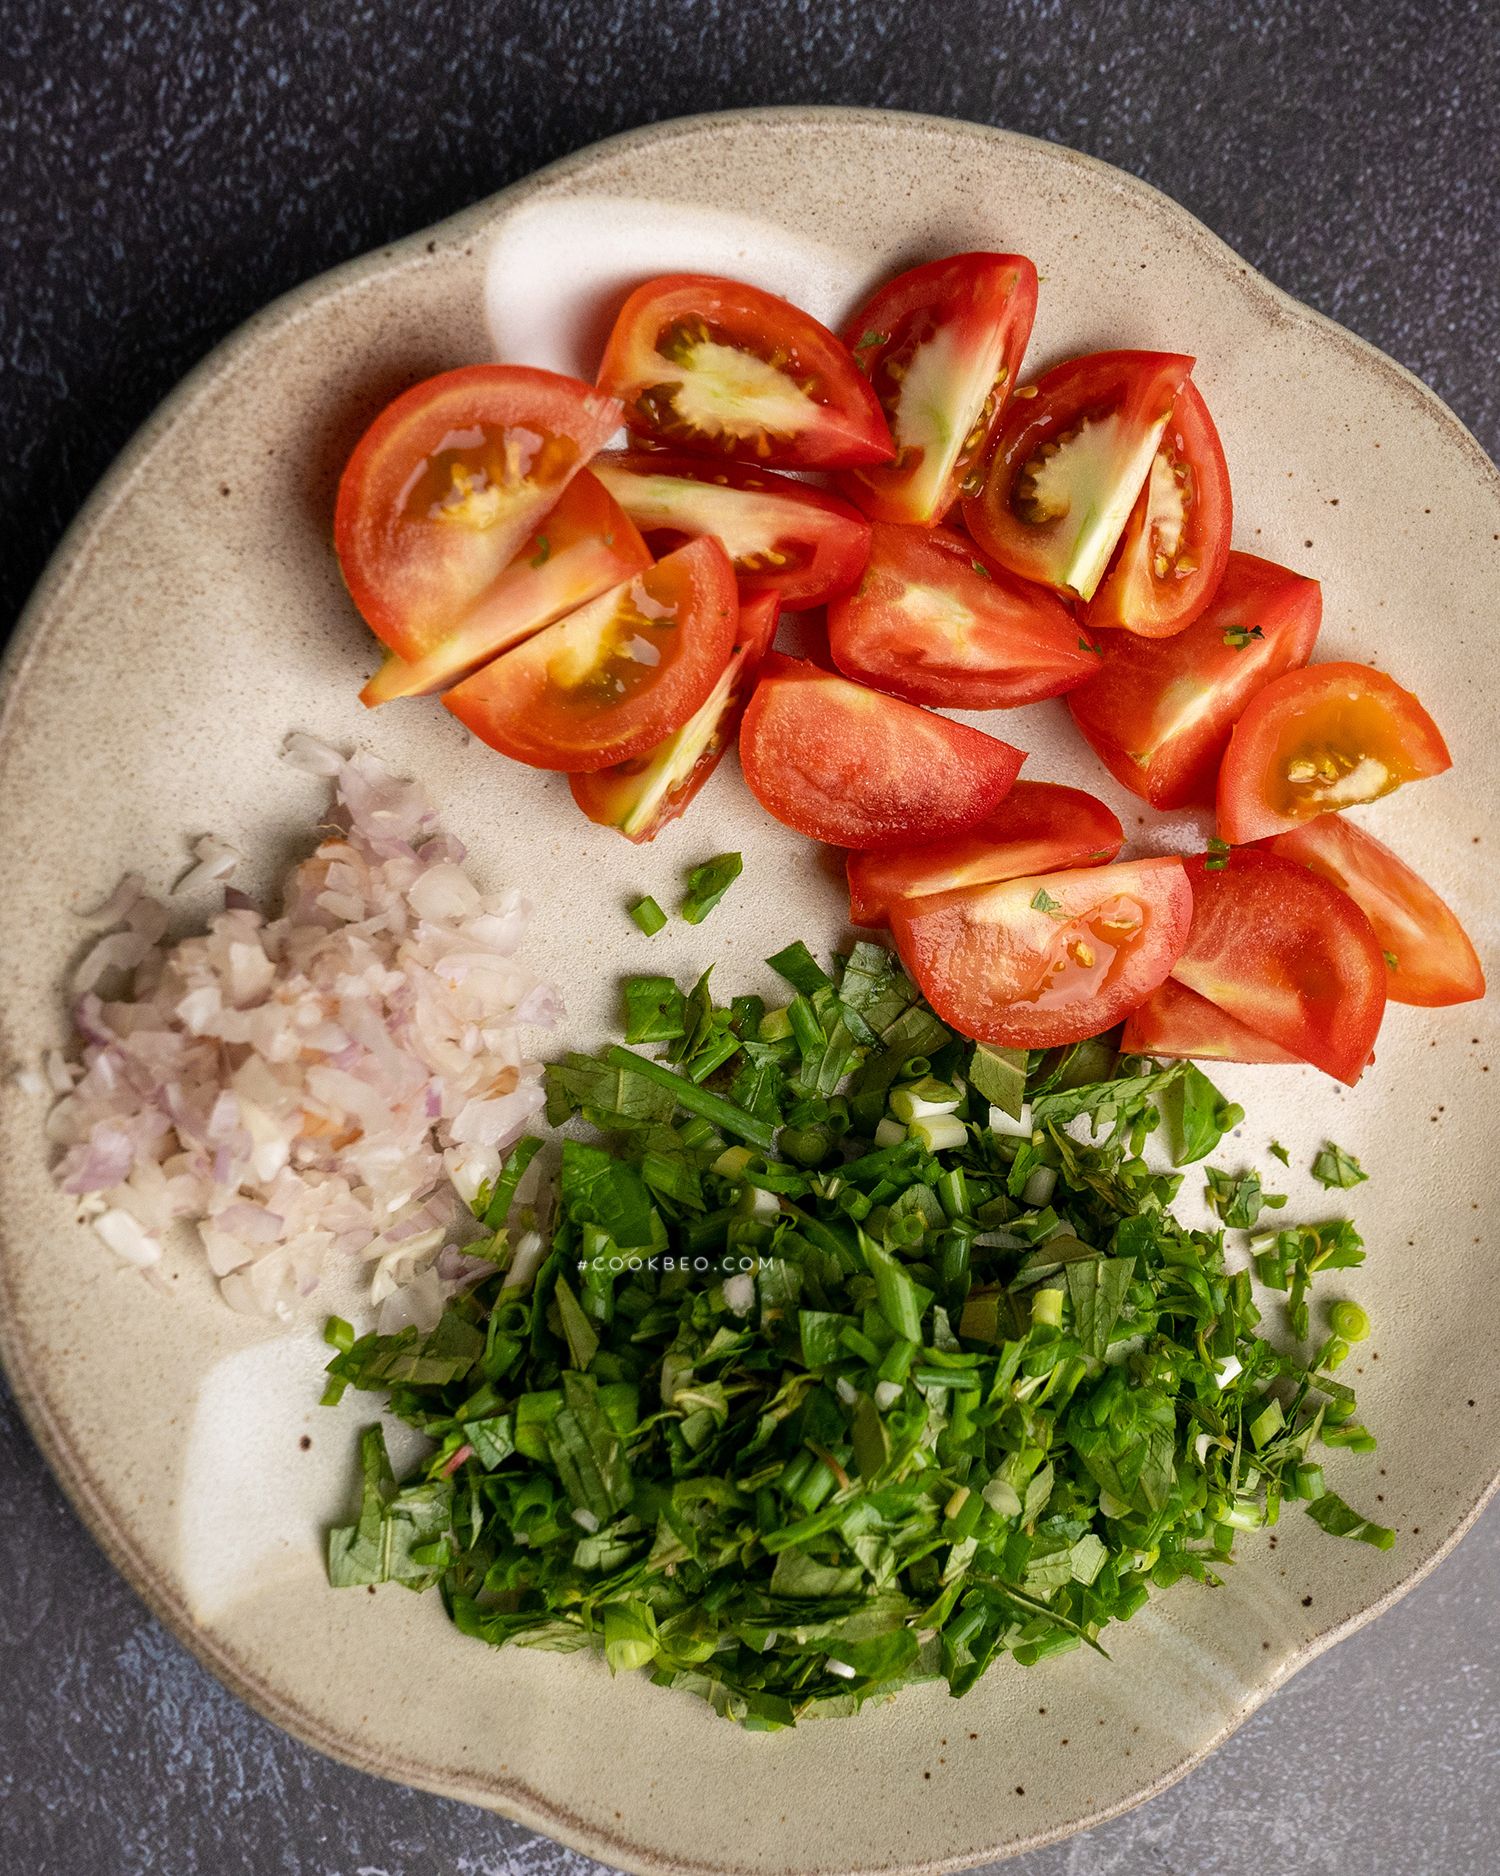 Cách tiến hành canh cải bắp trái khoáy quả cà chua siêu vừa phải thơm tho vừa phải ngon và giản dị và đơn giản và giản dị, dễ dàng và đơn giản tiến hành bên trên nhà!